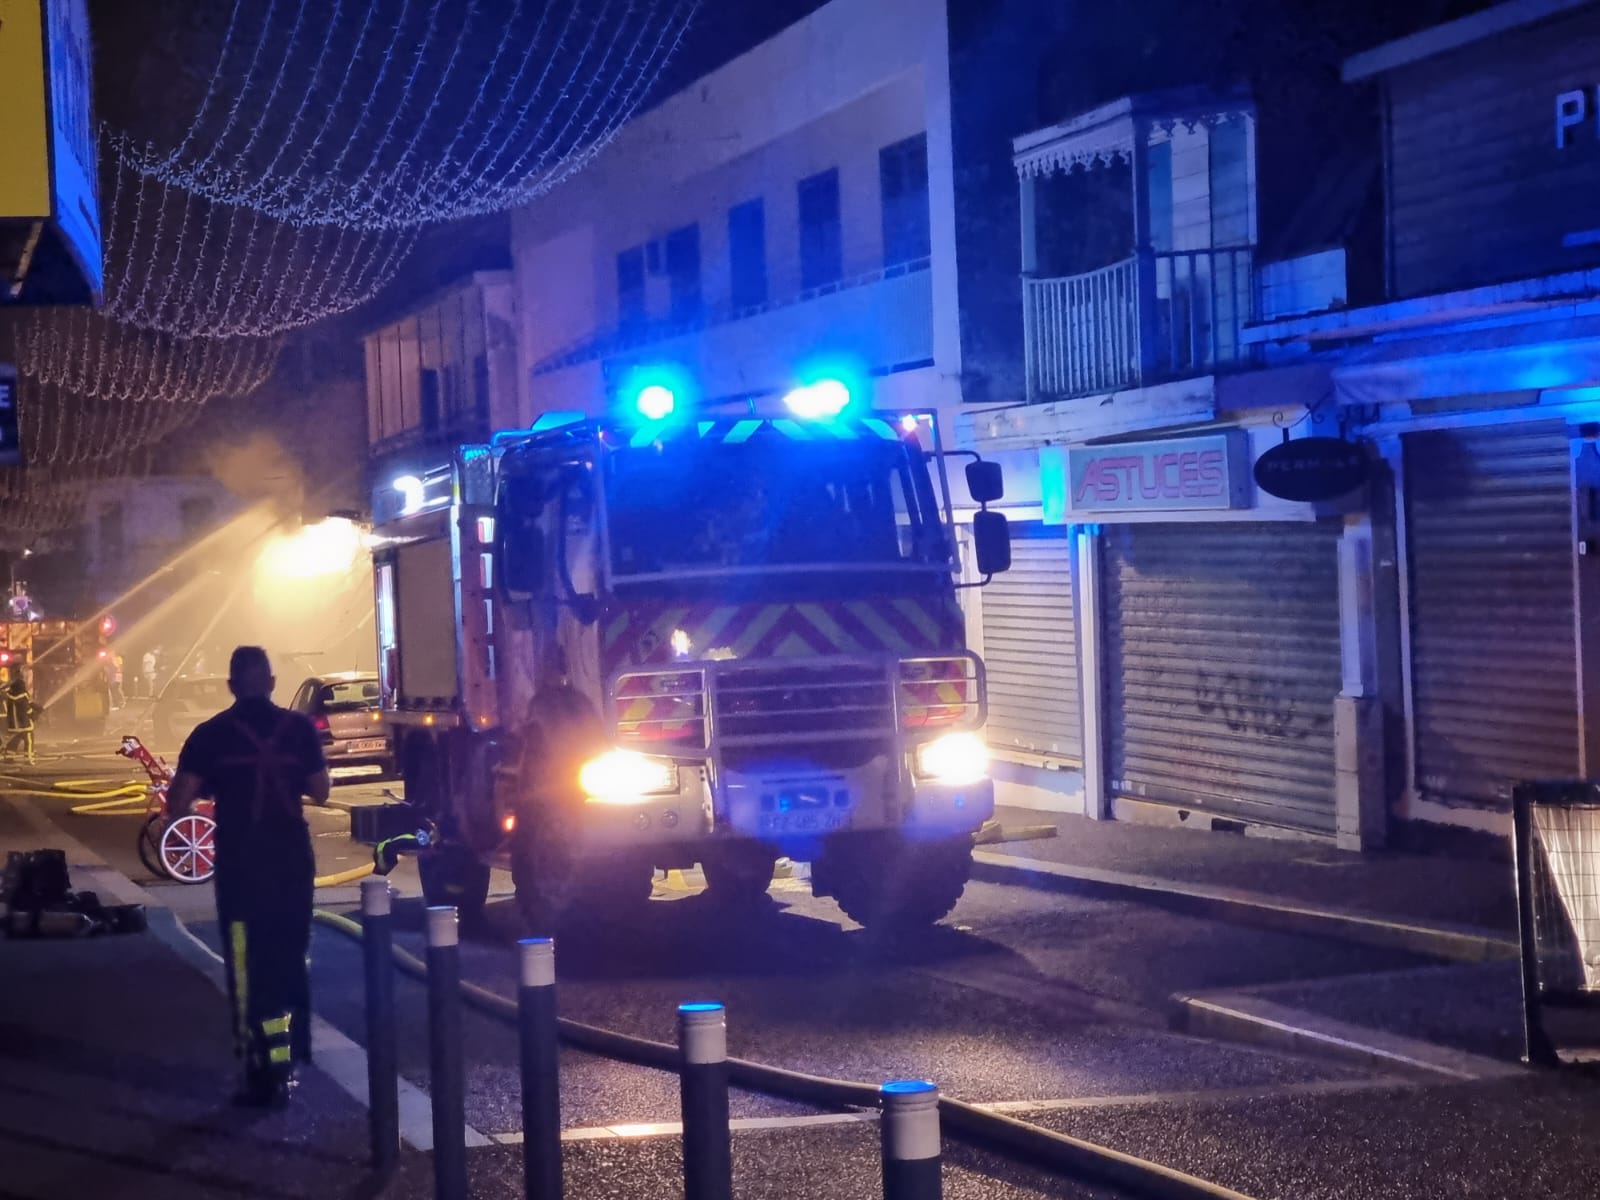 Le magasin de maroquinerie situé entre Jeff de Bruges et Mado, rue Pasteur, a été ravagé